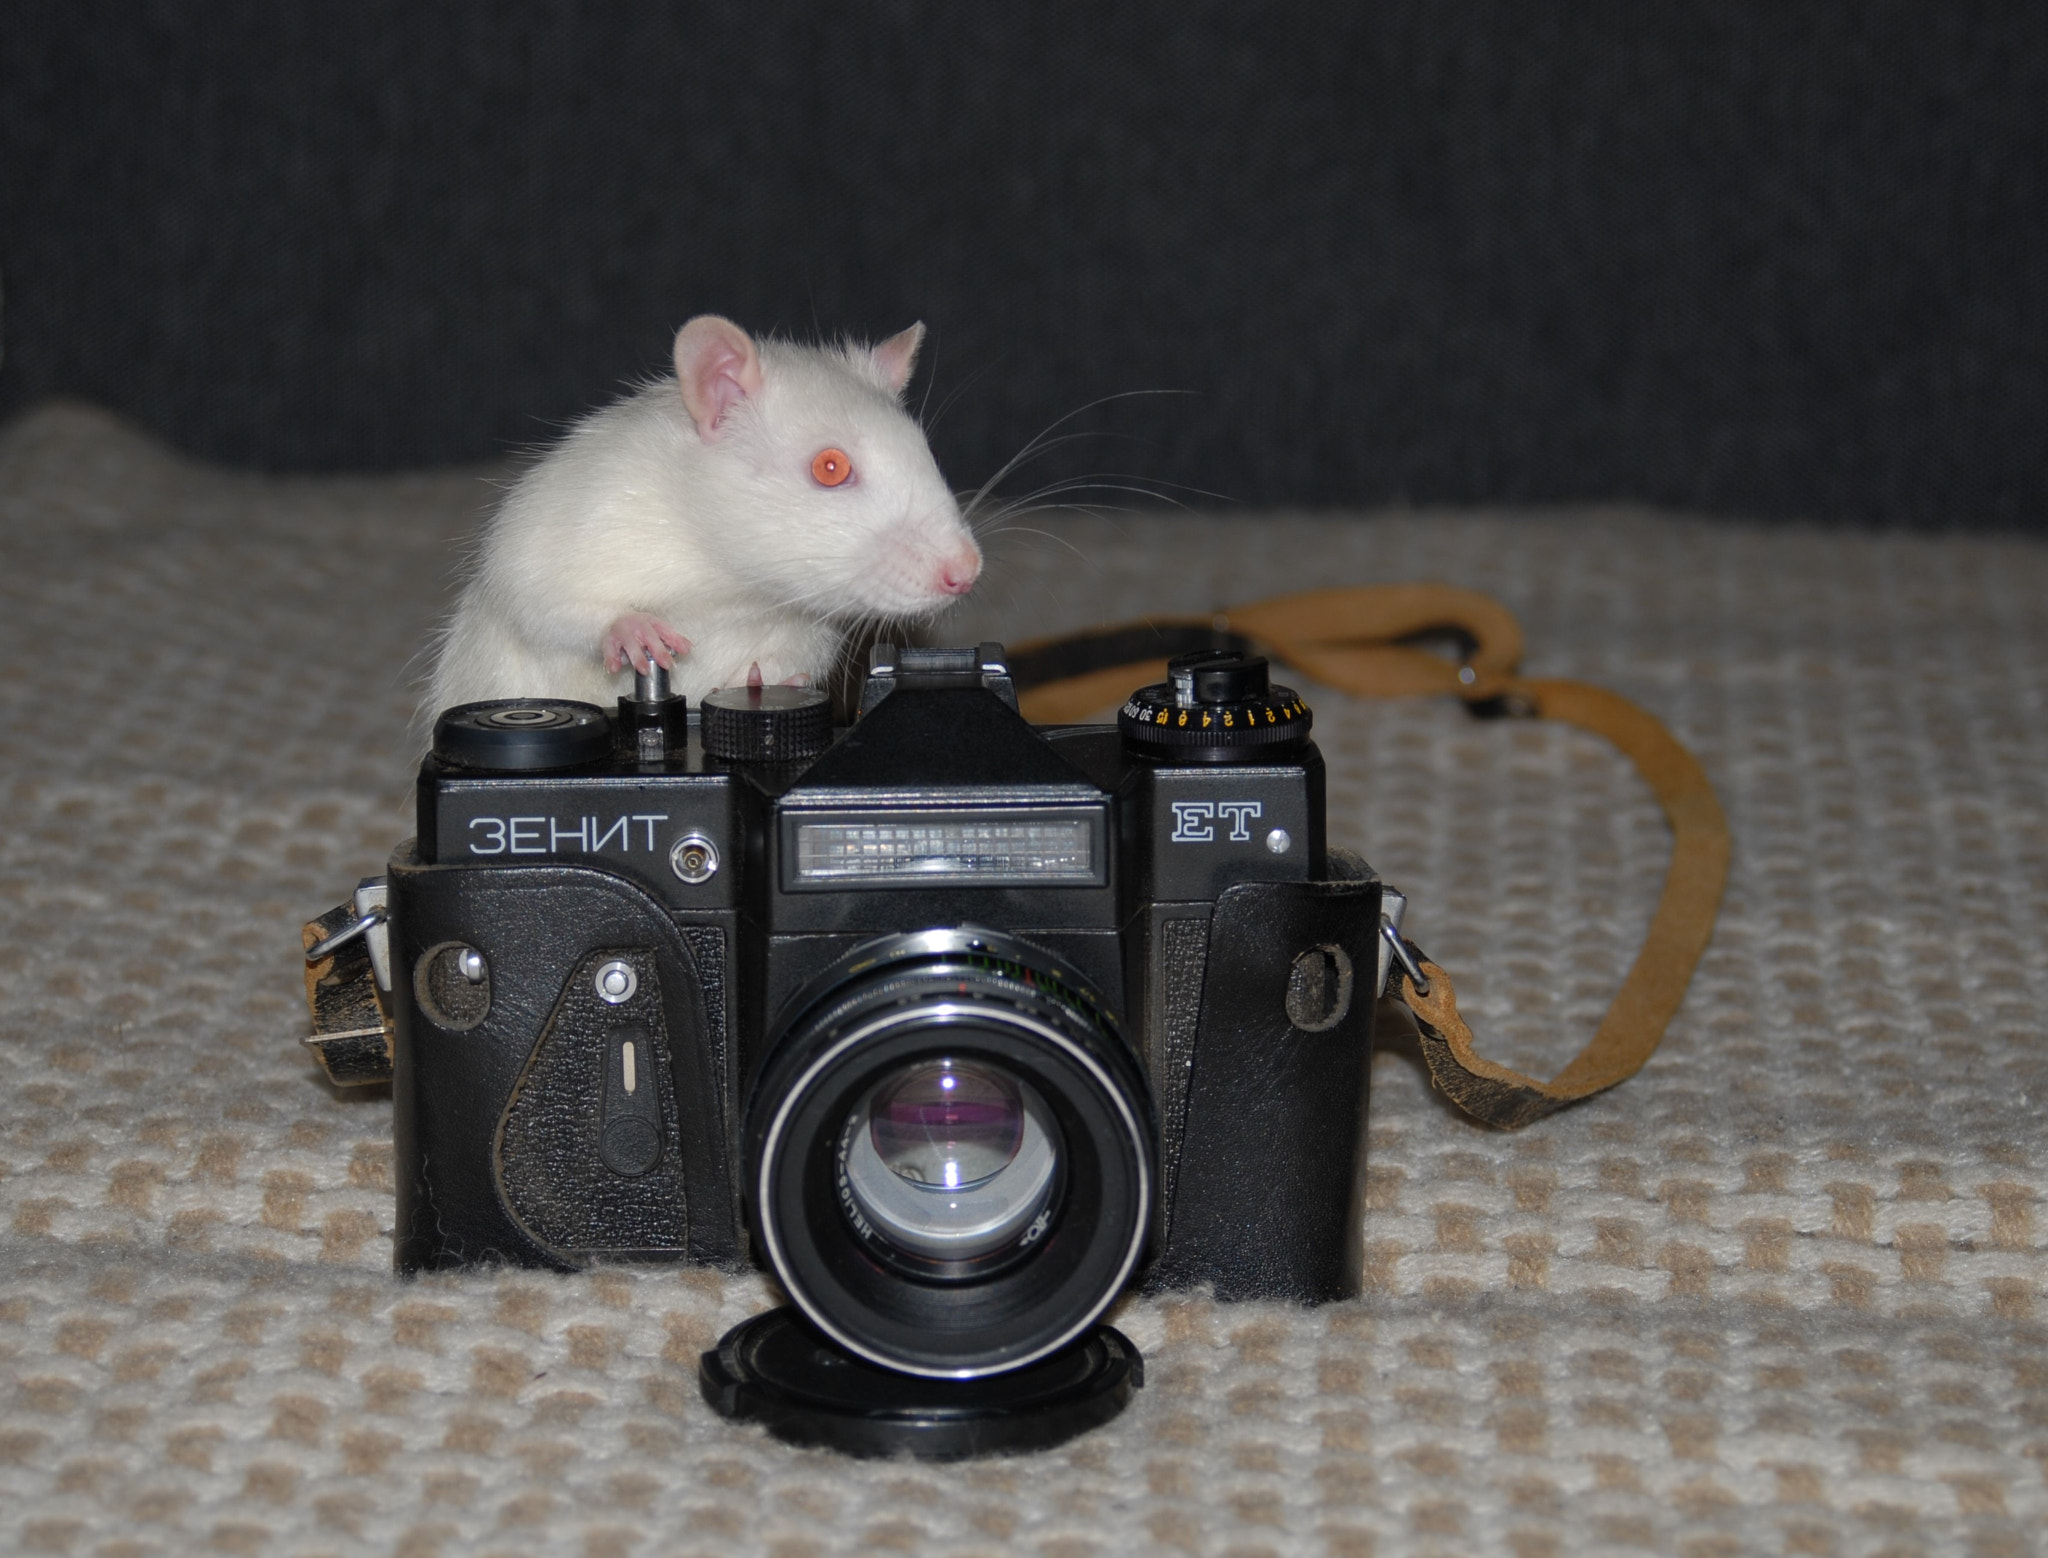 Nikon D200 + AF Zoom-Nikkor 28-80mm f/3.3-5.6G sample photo. My pet filming me) photography